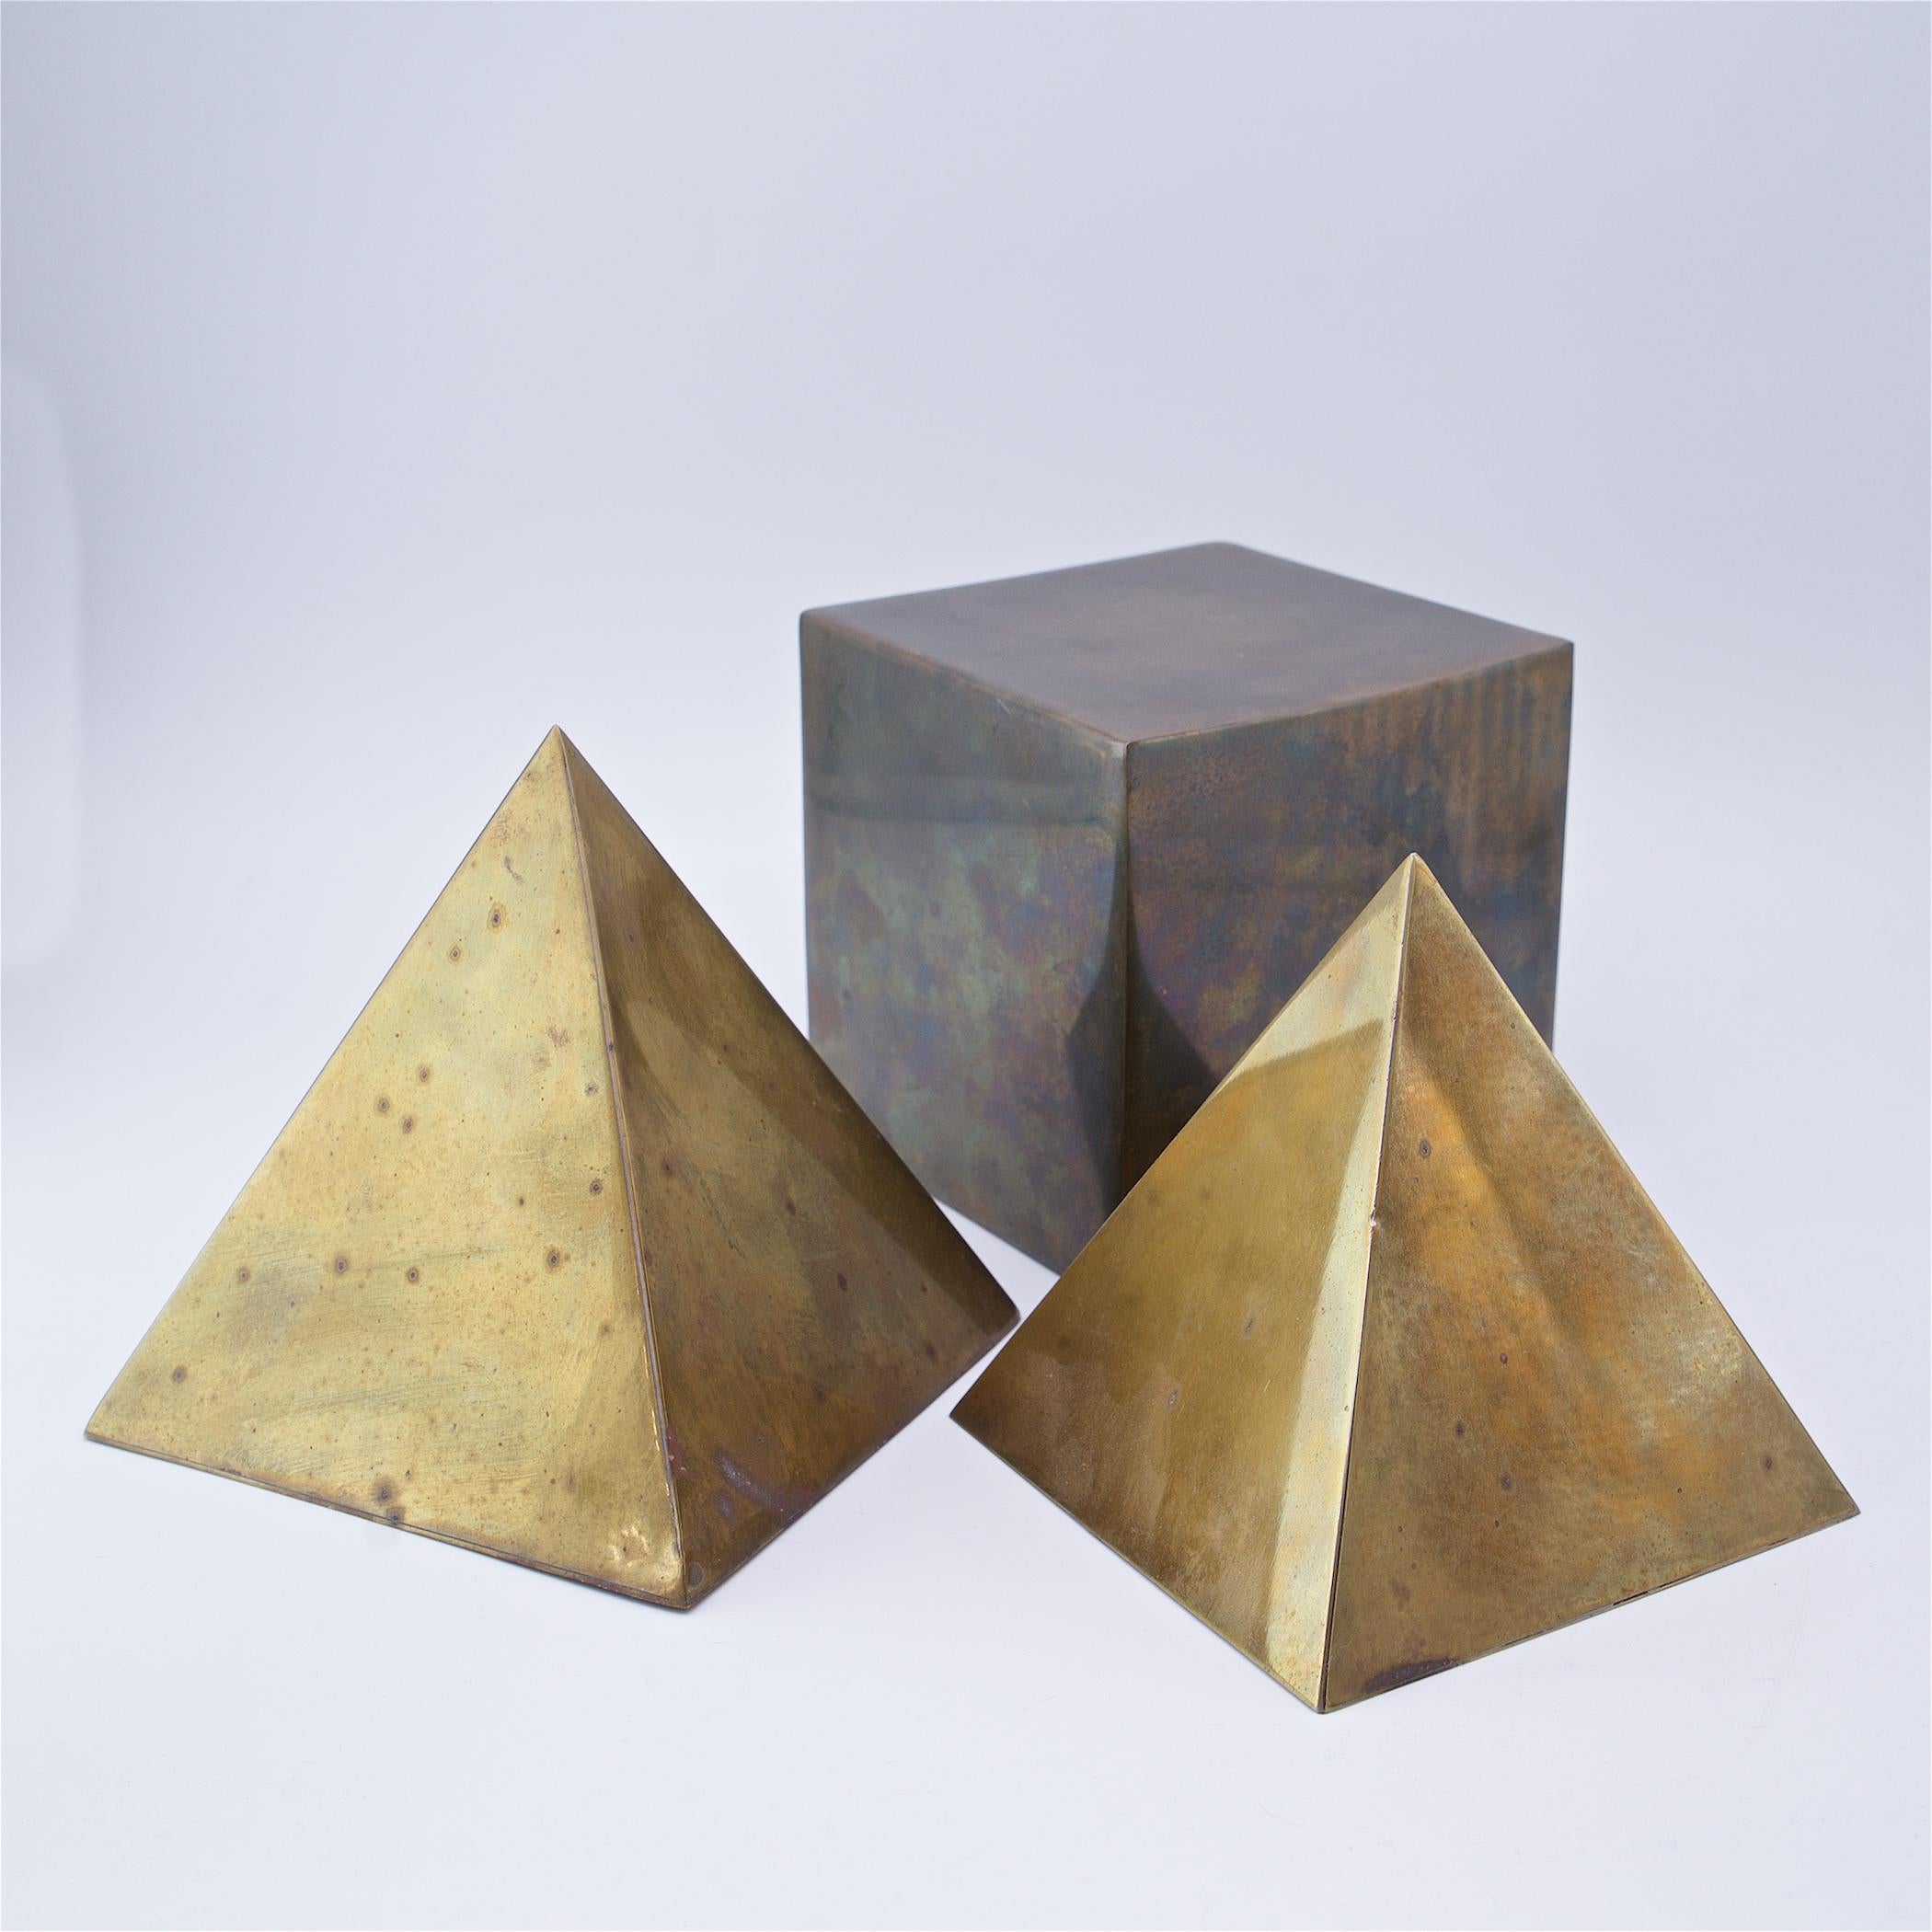 Formes abstraites en laiton marquées Sarreid Ltd., Italie, vers 1970. 

Sm pyramide L : 5 1/4 X P : 5 1/4 X H : 5 1/4 po.
Pyramide Md L : 5 5/8 X P : 5 5/8 X H : 6 po.
Cube L : 5 1/4 X P : 5 1/4 X H : 5 1/4 in.

Le laiton présente une usure,